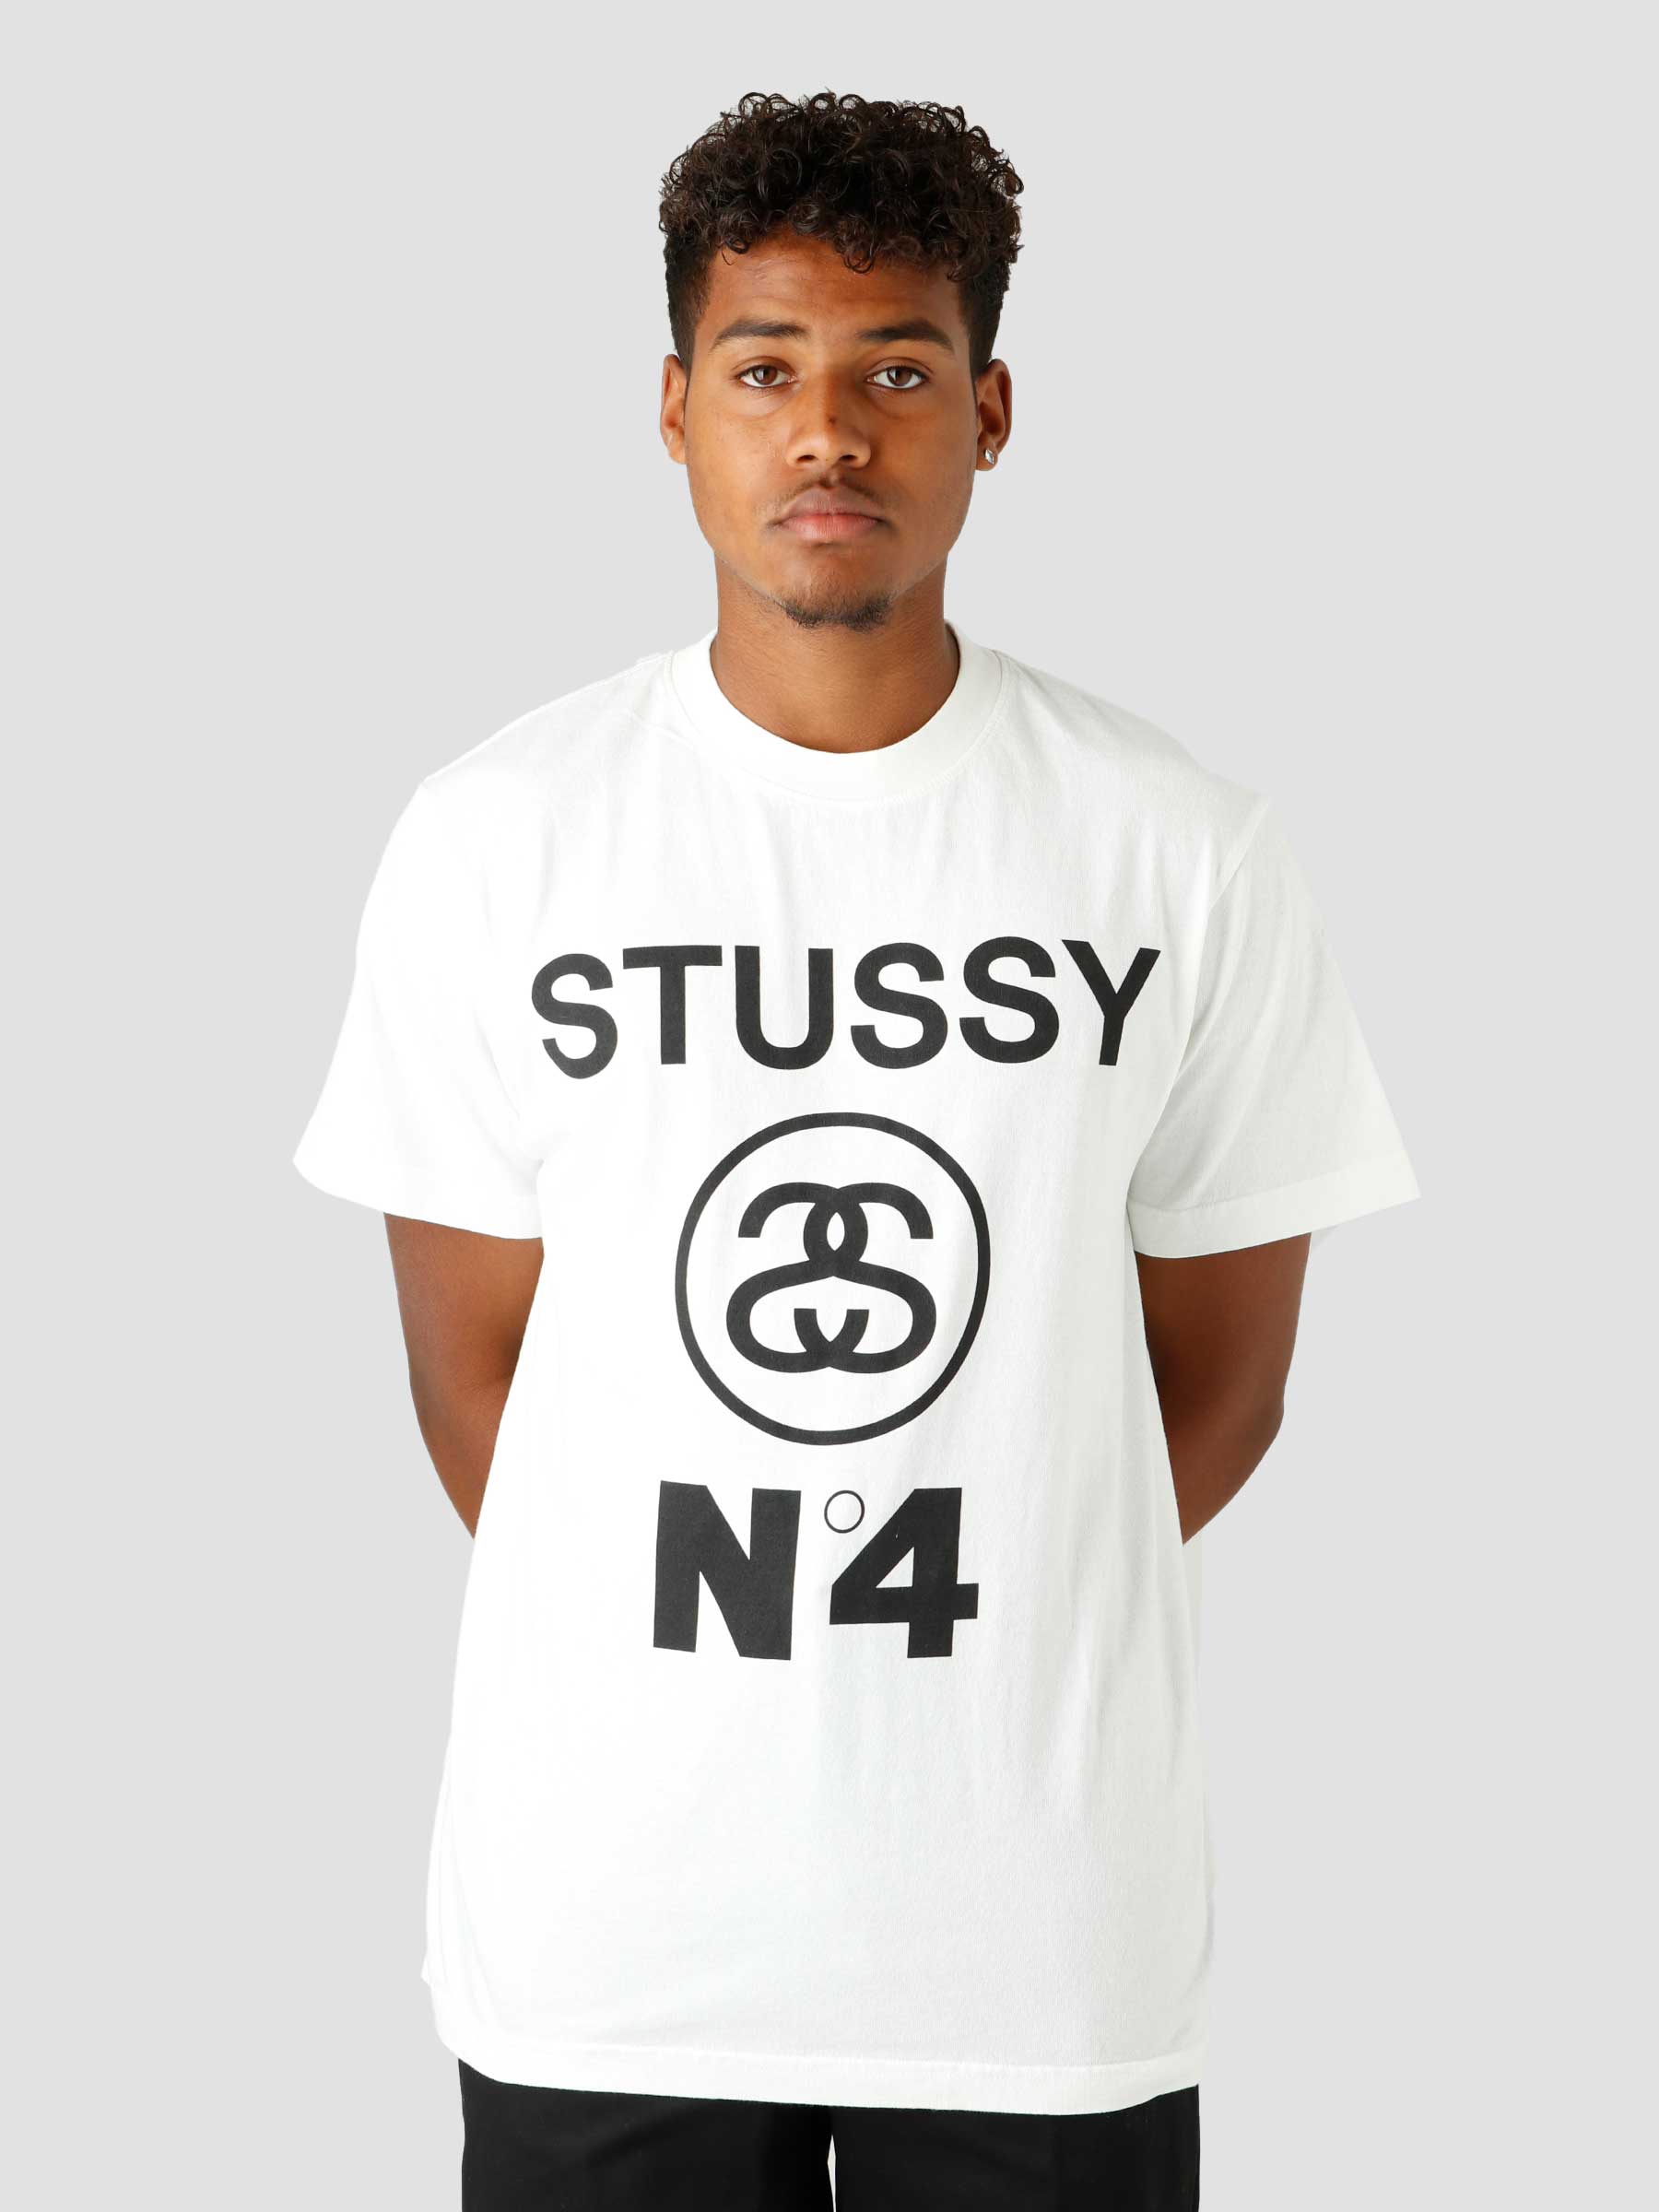 Tigge Almægtig nøjagtigt Stussy Stussy No.4 Pig. Dyed T-shirt Natural 1904804 | Freshcotton